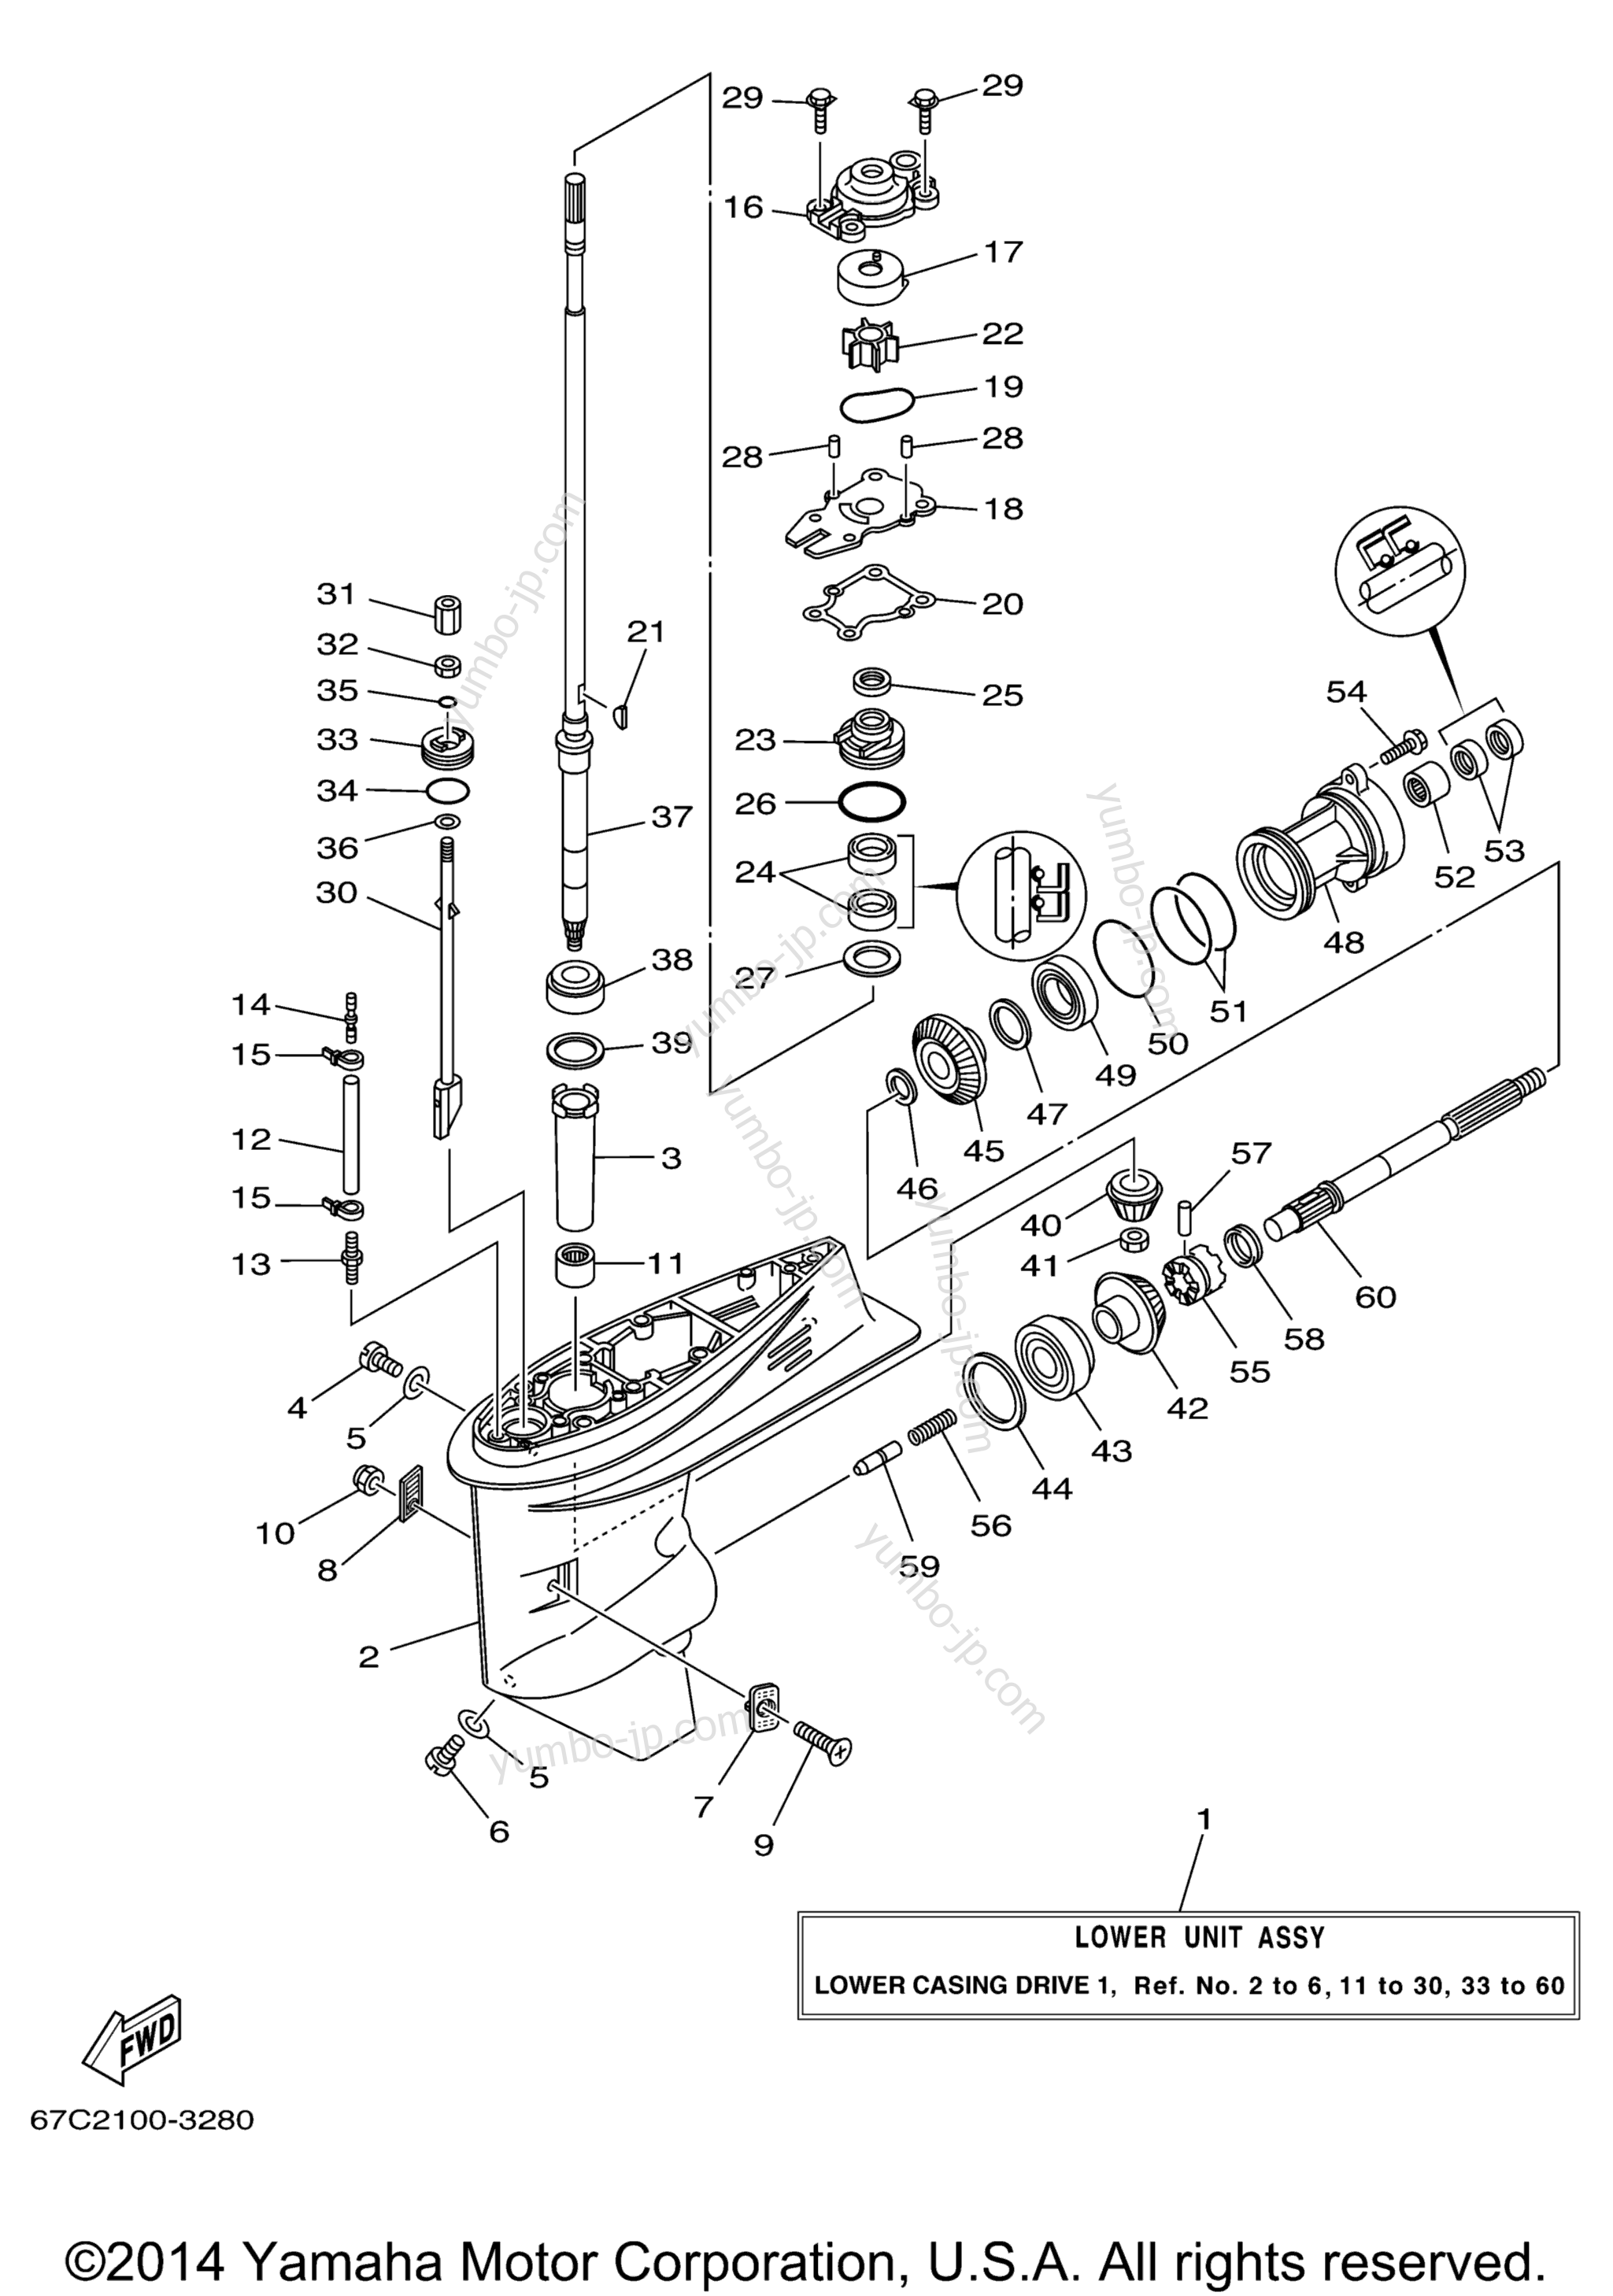 Lower Casing Drive 1 для лодочных моторов YAMAHA F40TLRD_MSHD_MLHD_MJHD_ELRD (F40MLHD) 2005 г.